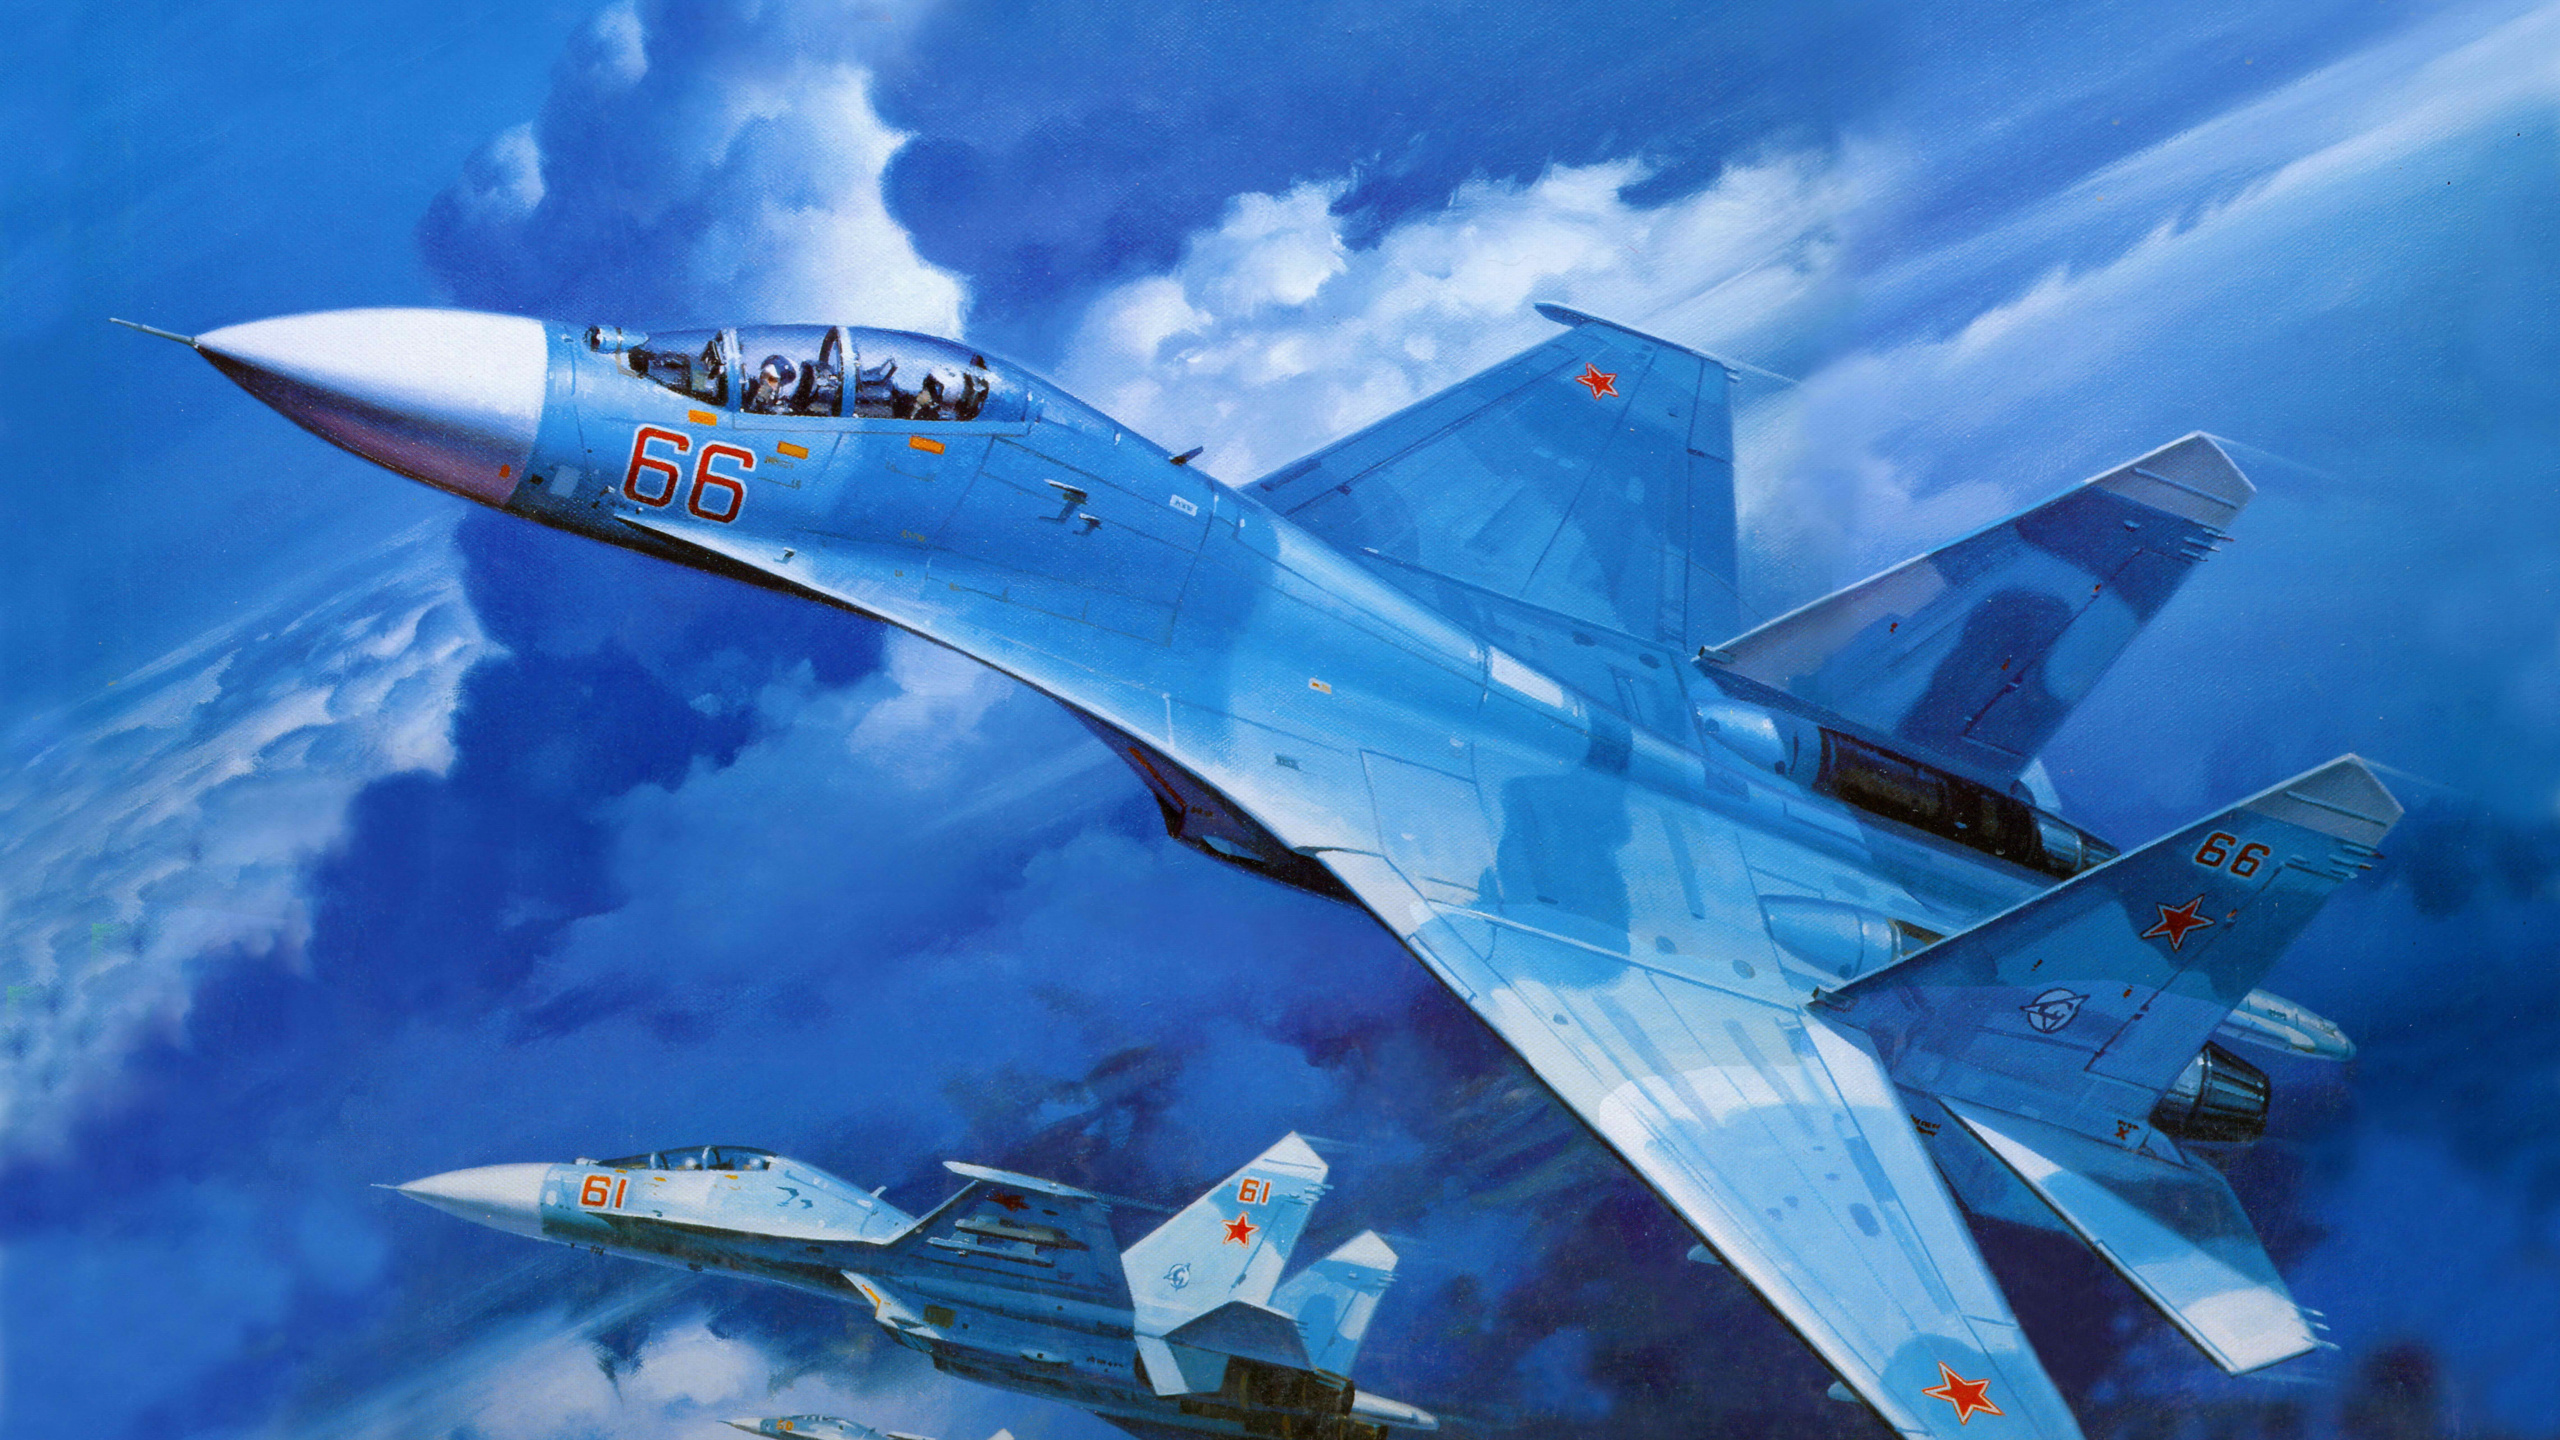 Weißes Und Blaues Düsenflugzeug Unter Blauem Himmel Tagsüber. Wallpaper in 2560x1440 Resolution